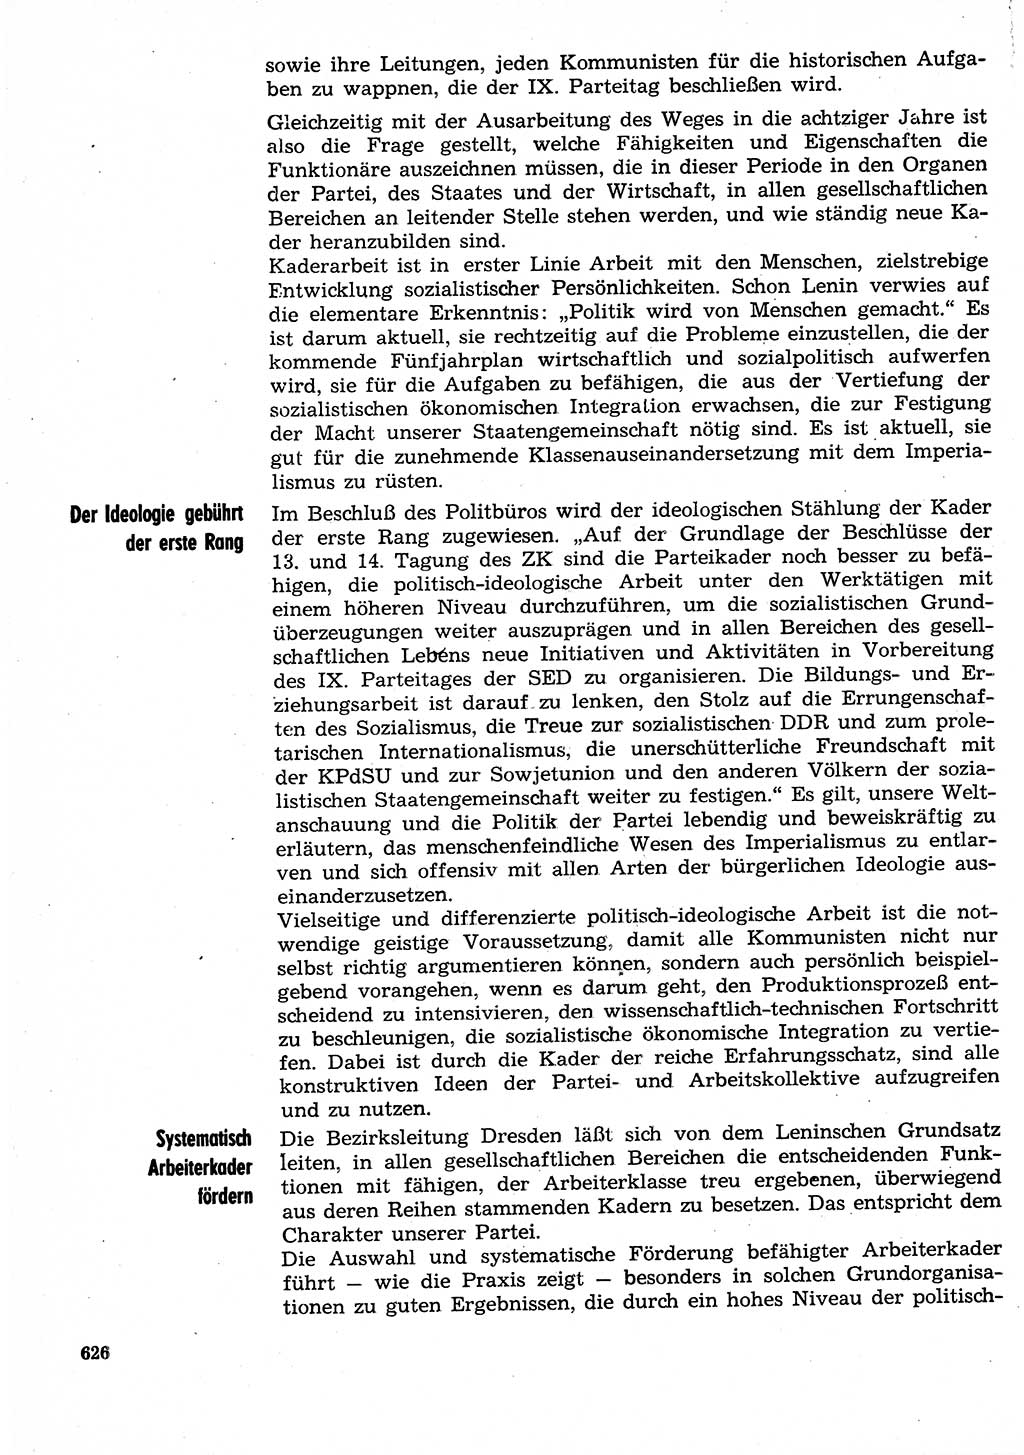 Neuer Weg (NW), Organ des Zentralkomitees (ZK) der SED (Sozialistische Einheitspartei Deutschlands) für Fragen des Parteilebens, 30. Jahrgang [Deutsche Demokratische Republik (DDR)] 1975, Seite 626 (NW ZK SED DDR 1975, S. 626)